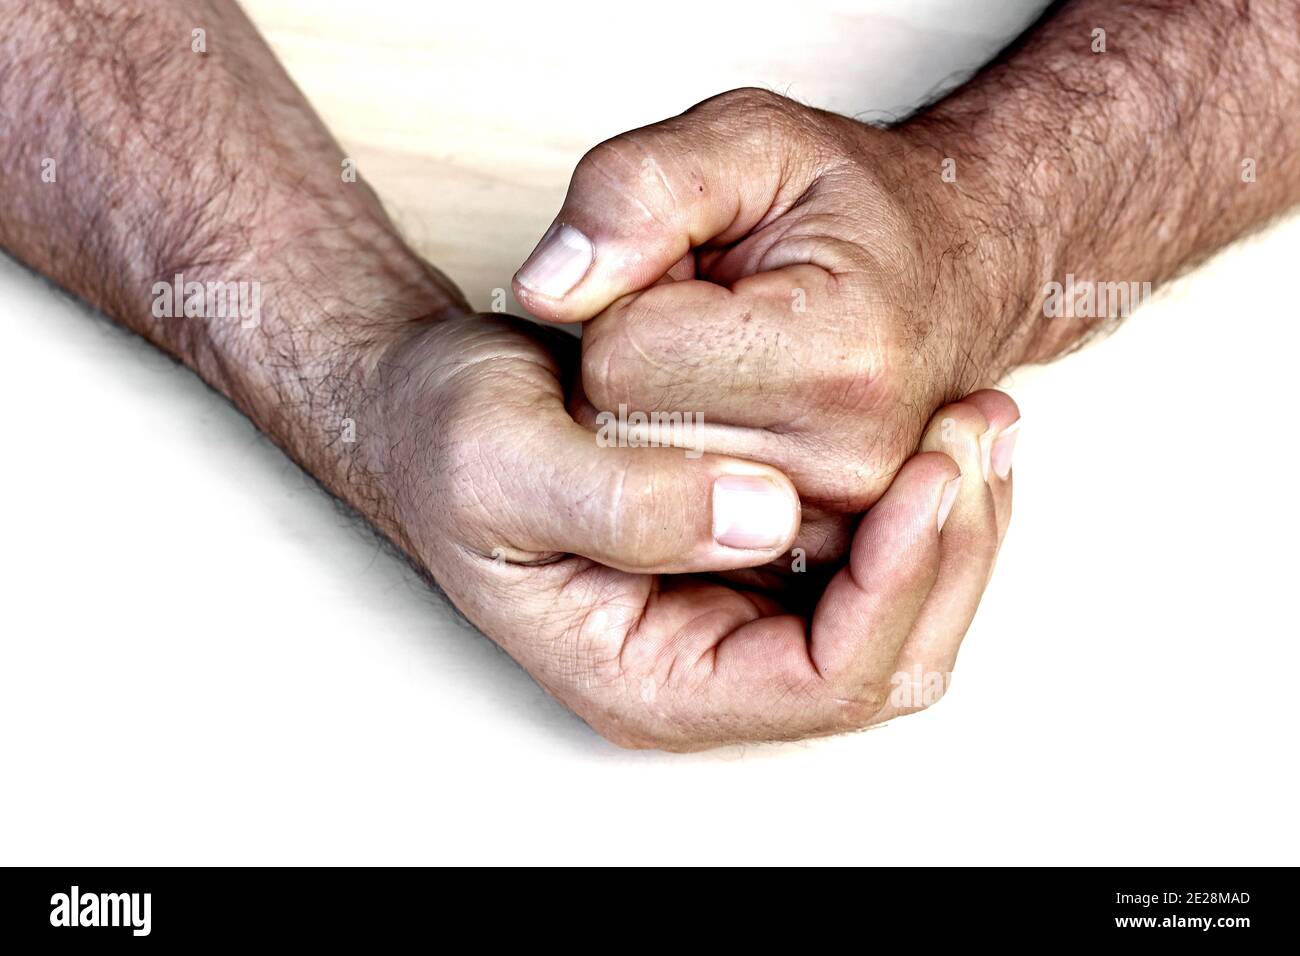 Un homme clenche sa main à son poing. Rage, colère, violence, agression Banque D'Images